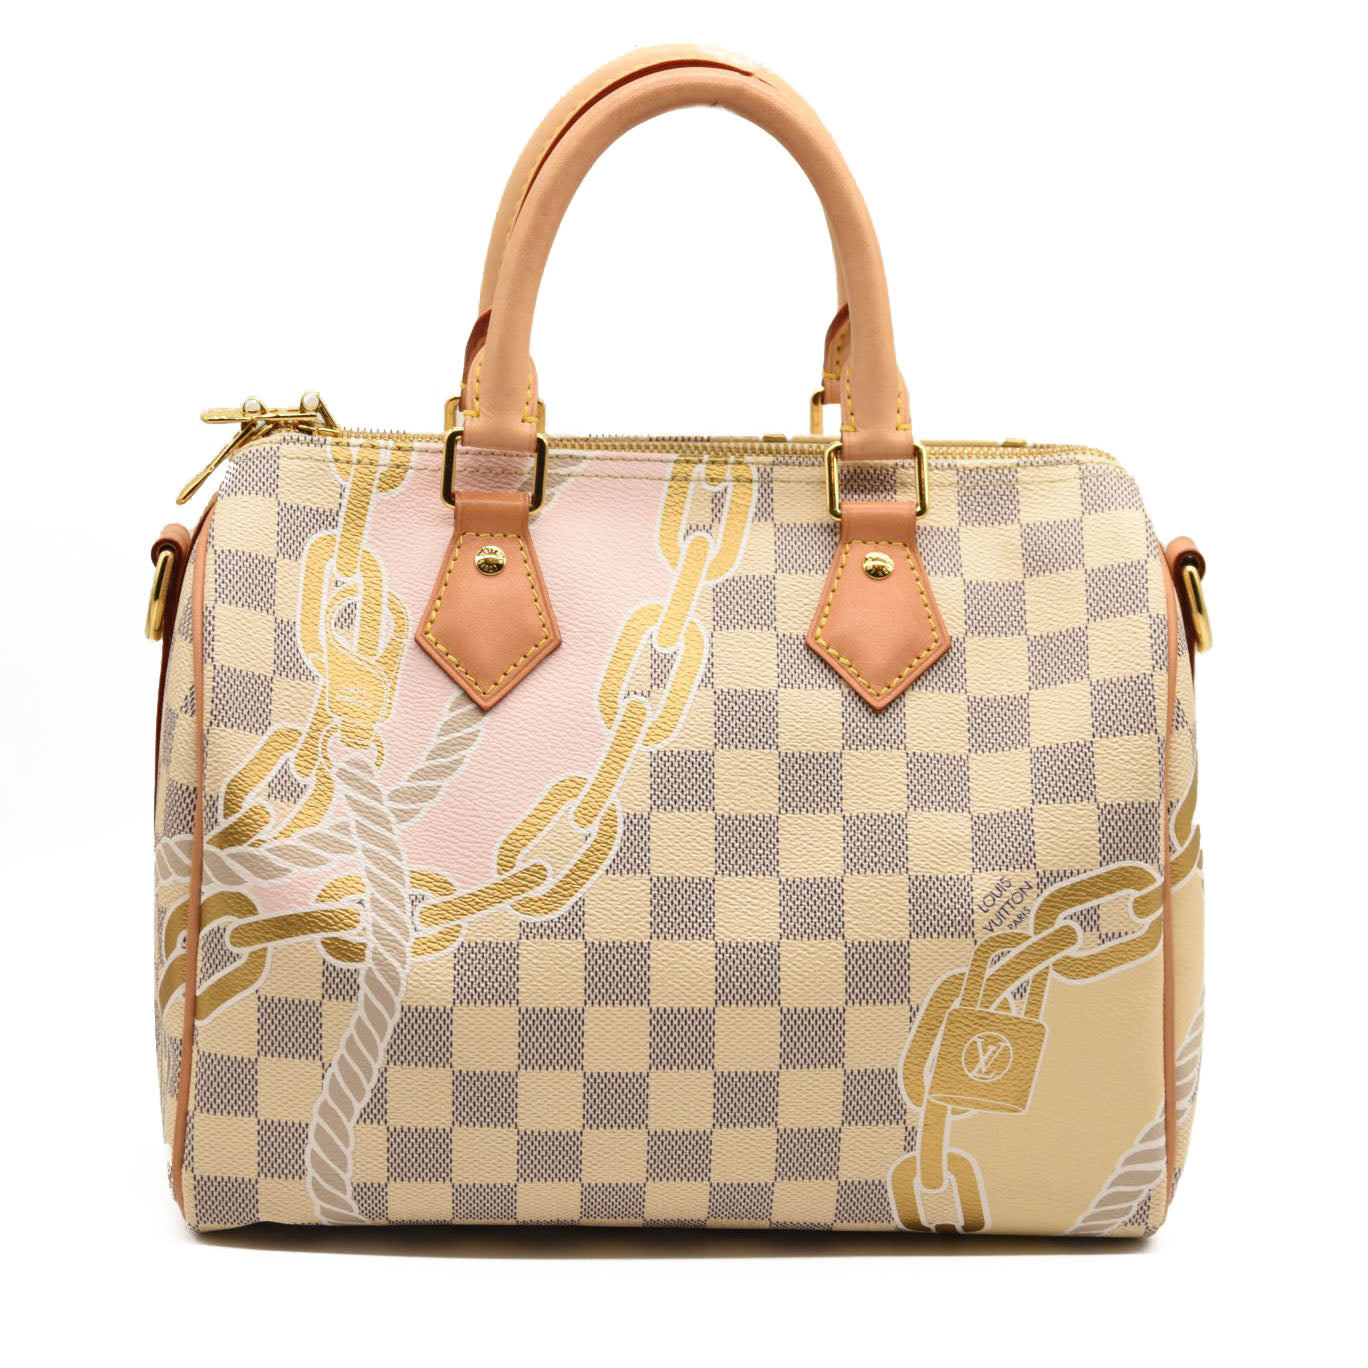 My gorgeous speedy 30 bandouliere in damier azur  Louis vuitton handbags  outlet, Louis vuitton bag, Louis vuitton